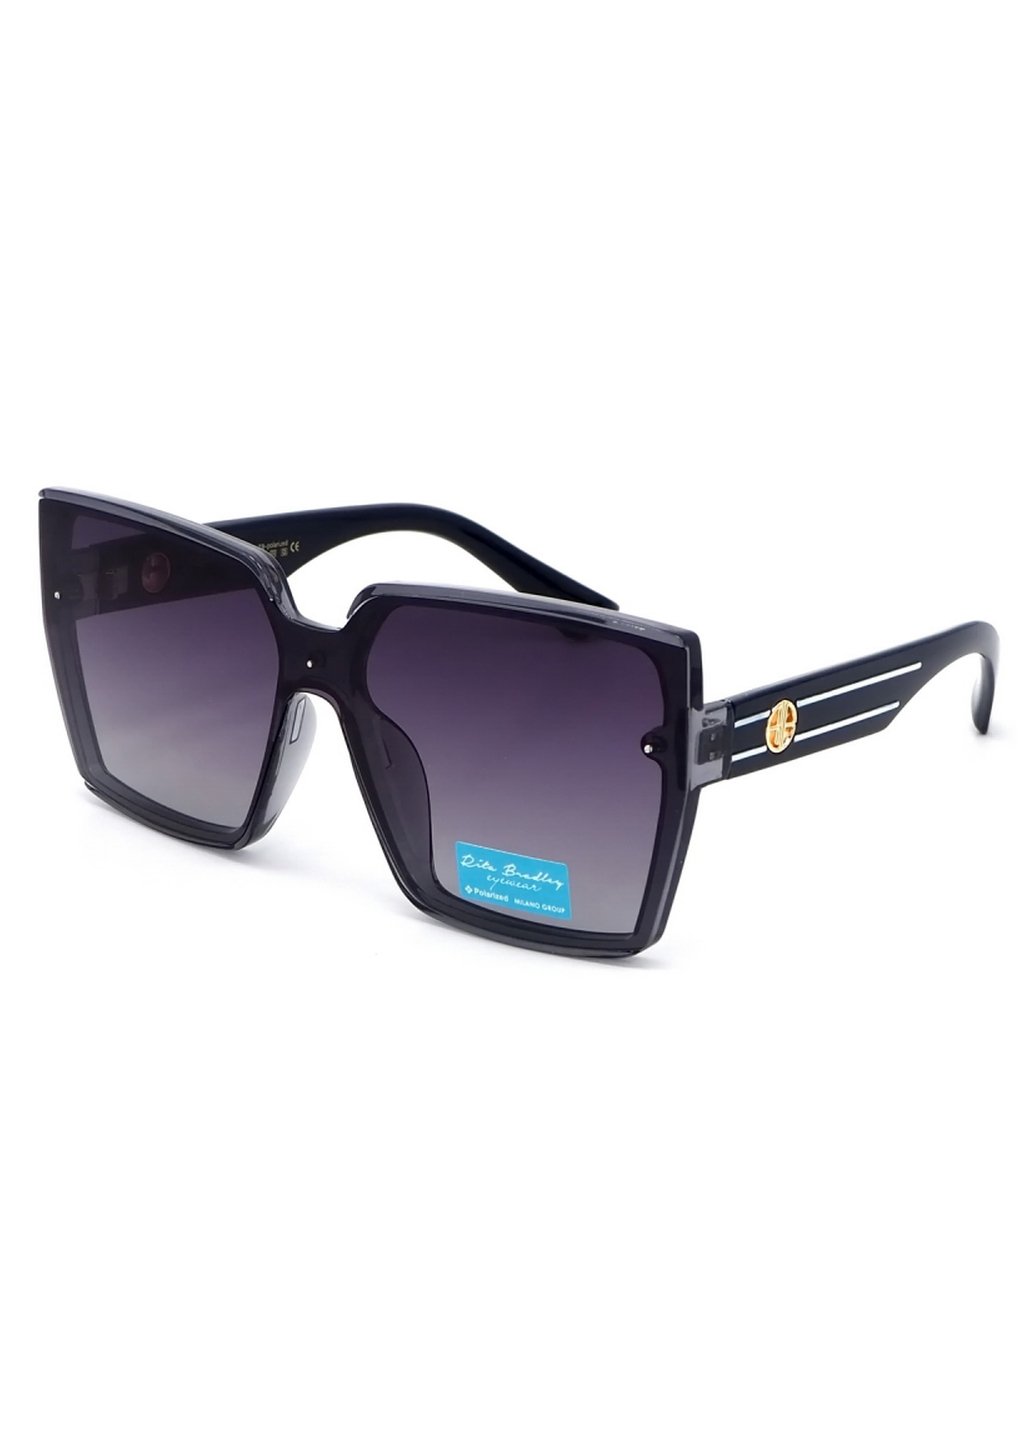 Купить Женские солнцезащитные очки Rita Bradley с поляризацией RB733 112089 в интернет-магазине